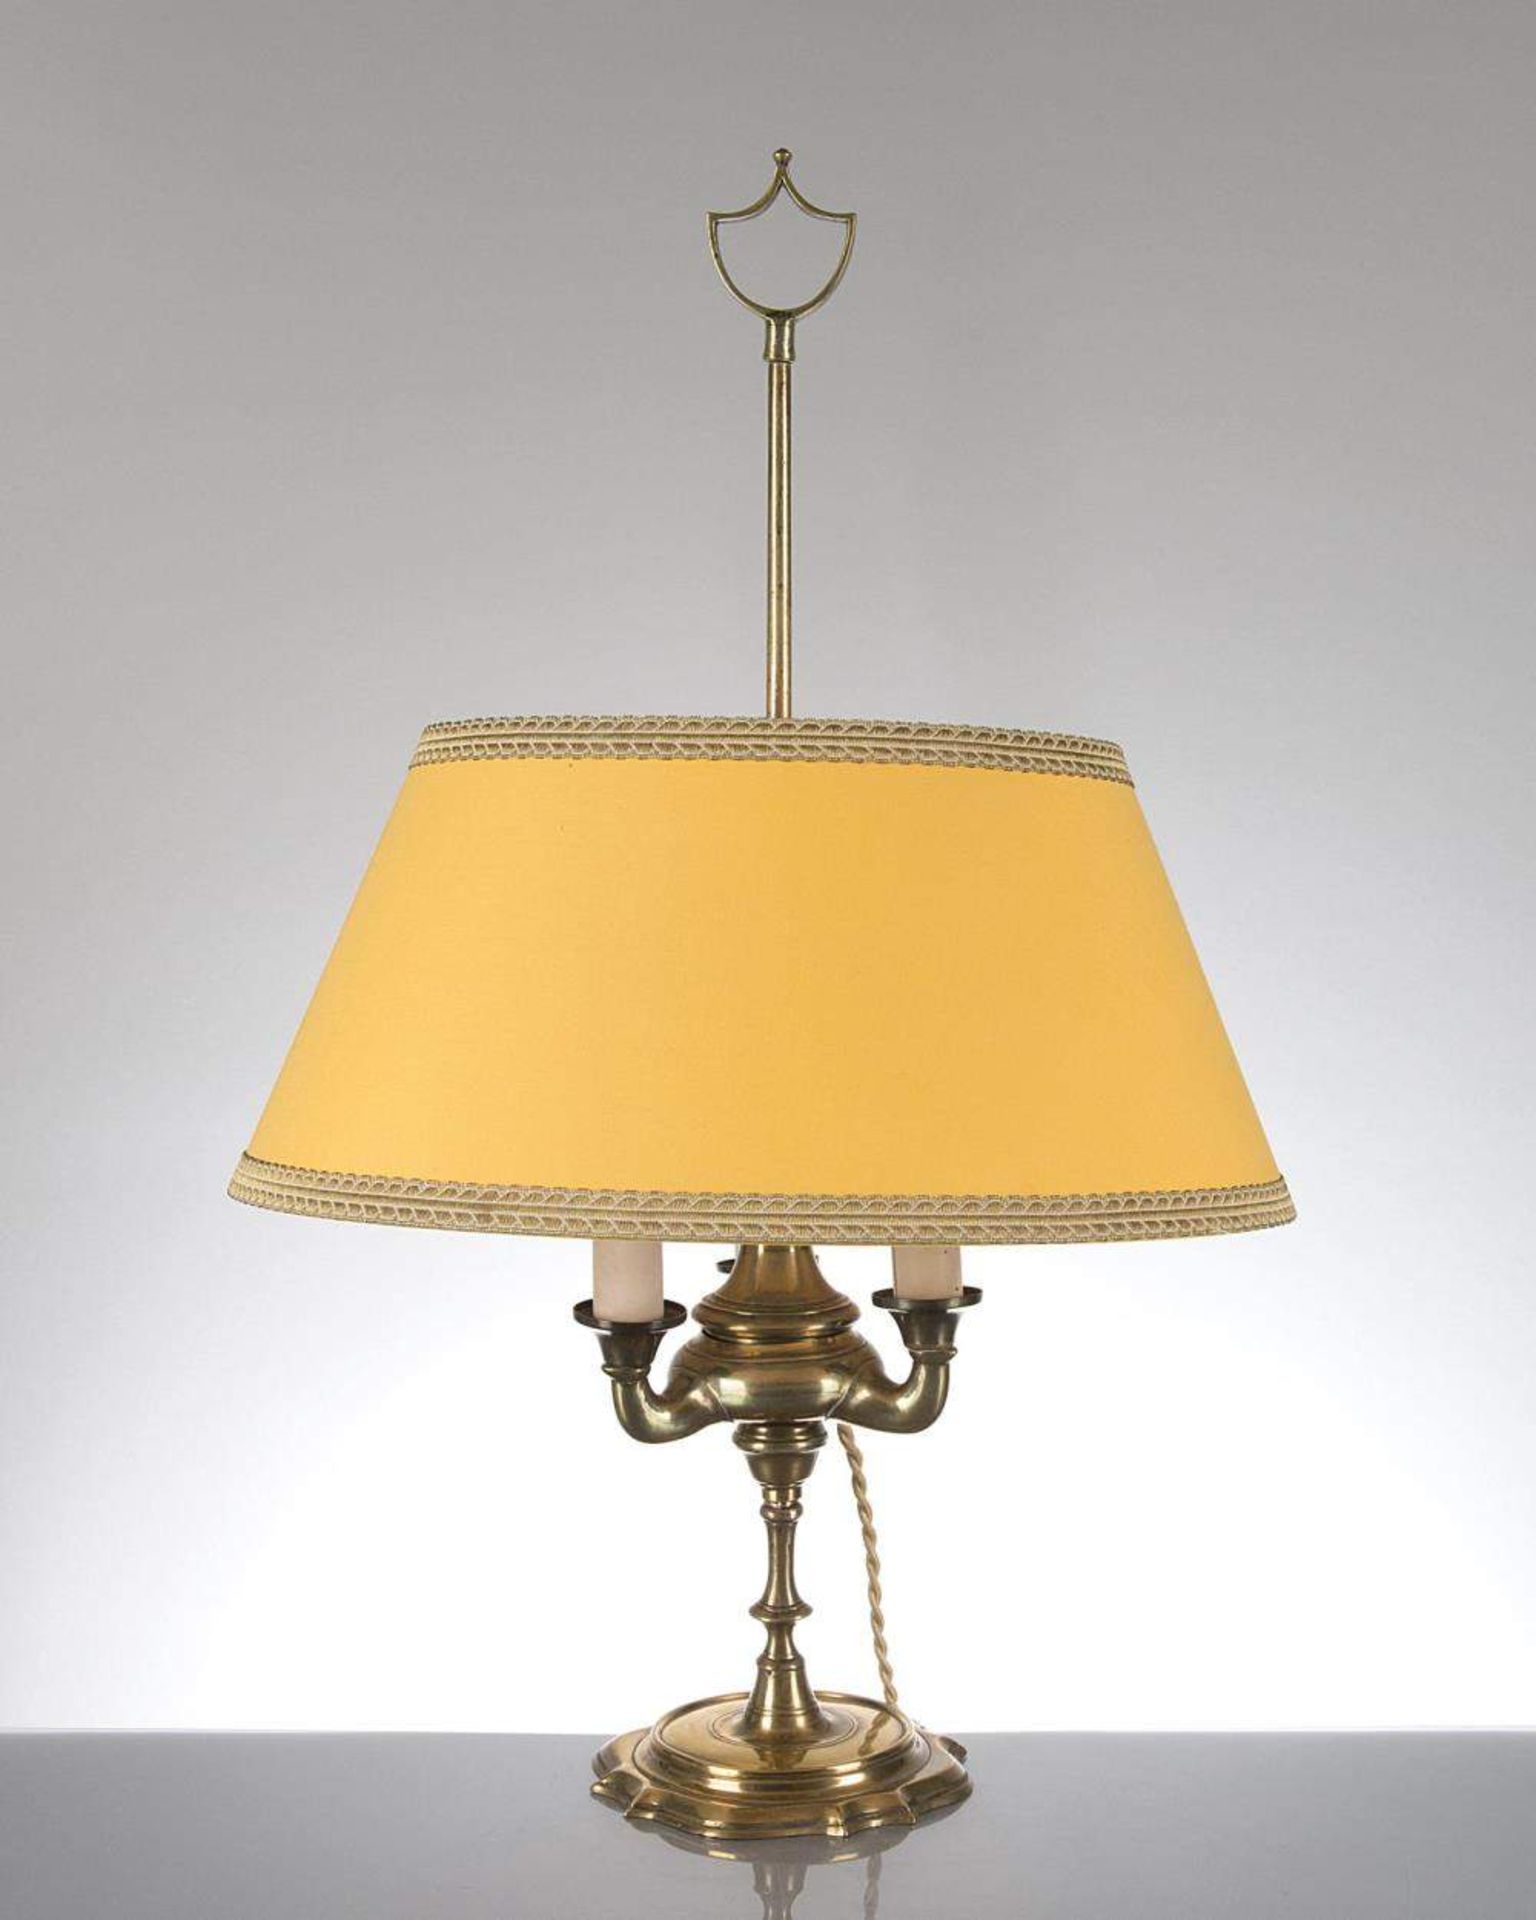 lampe bouillotte en métal doré à 3 feux, abat-jour moderne.
 
H. 60 cm